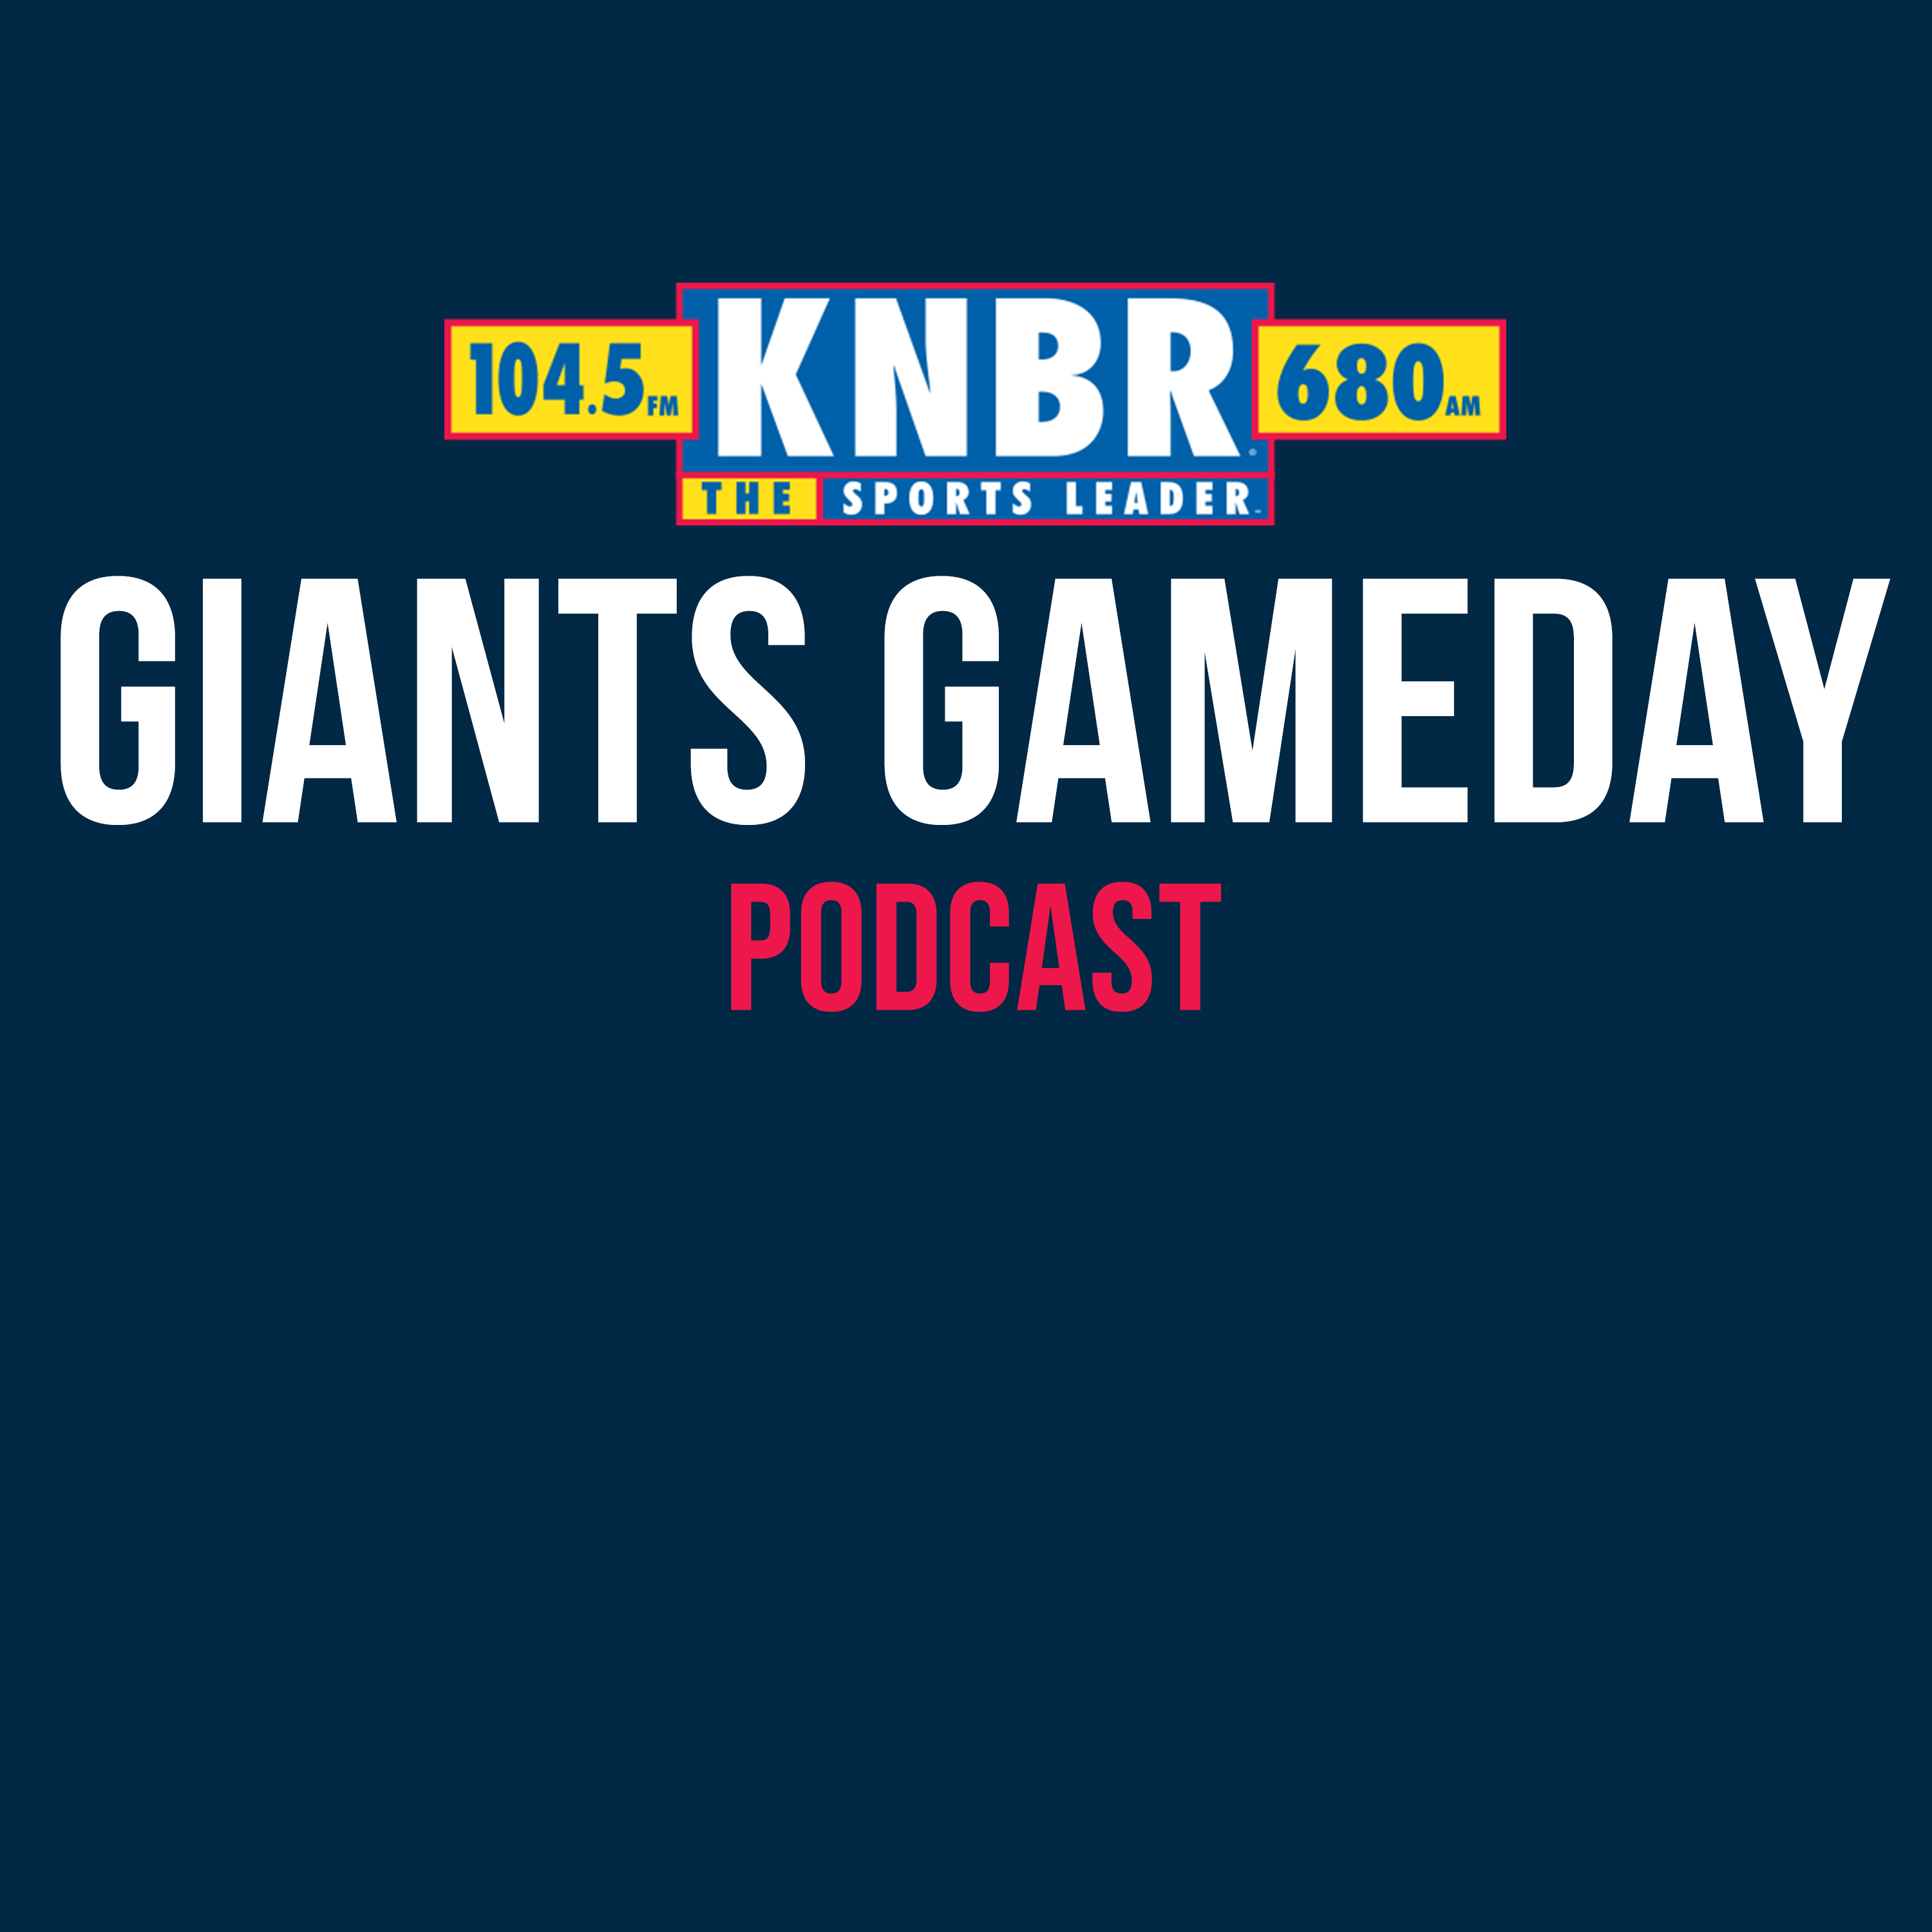 7-1 Postgame Highlights: DBacks 5, Giants 3